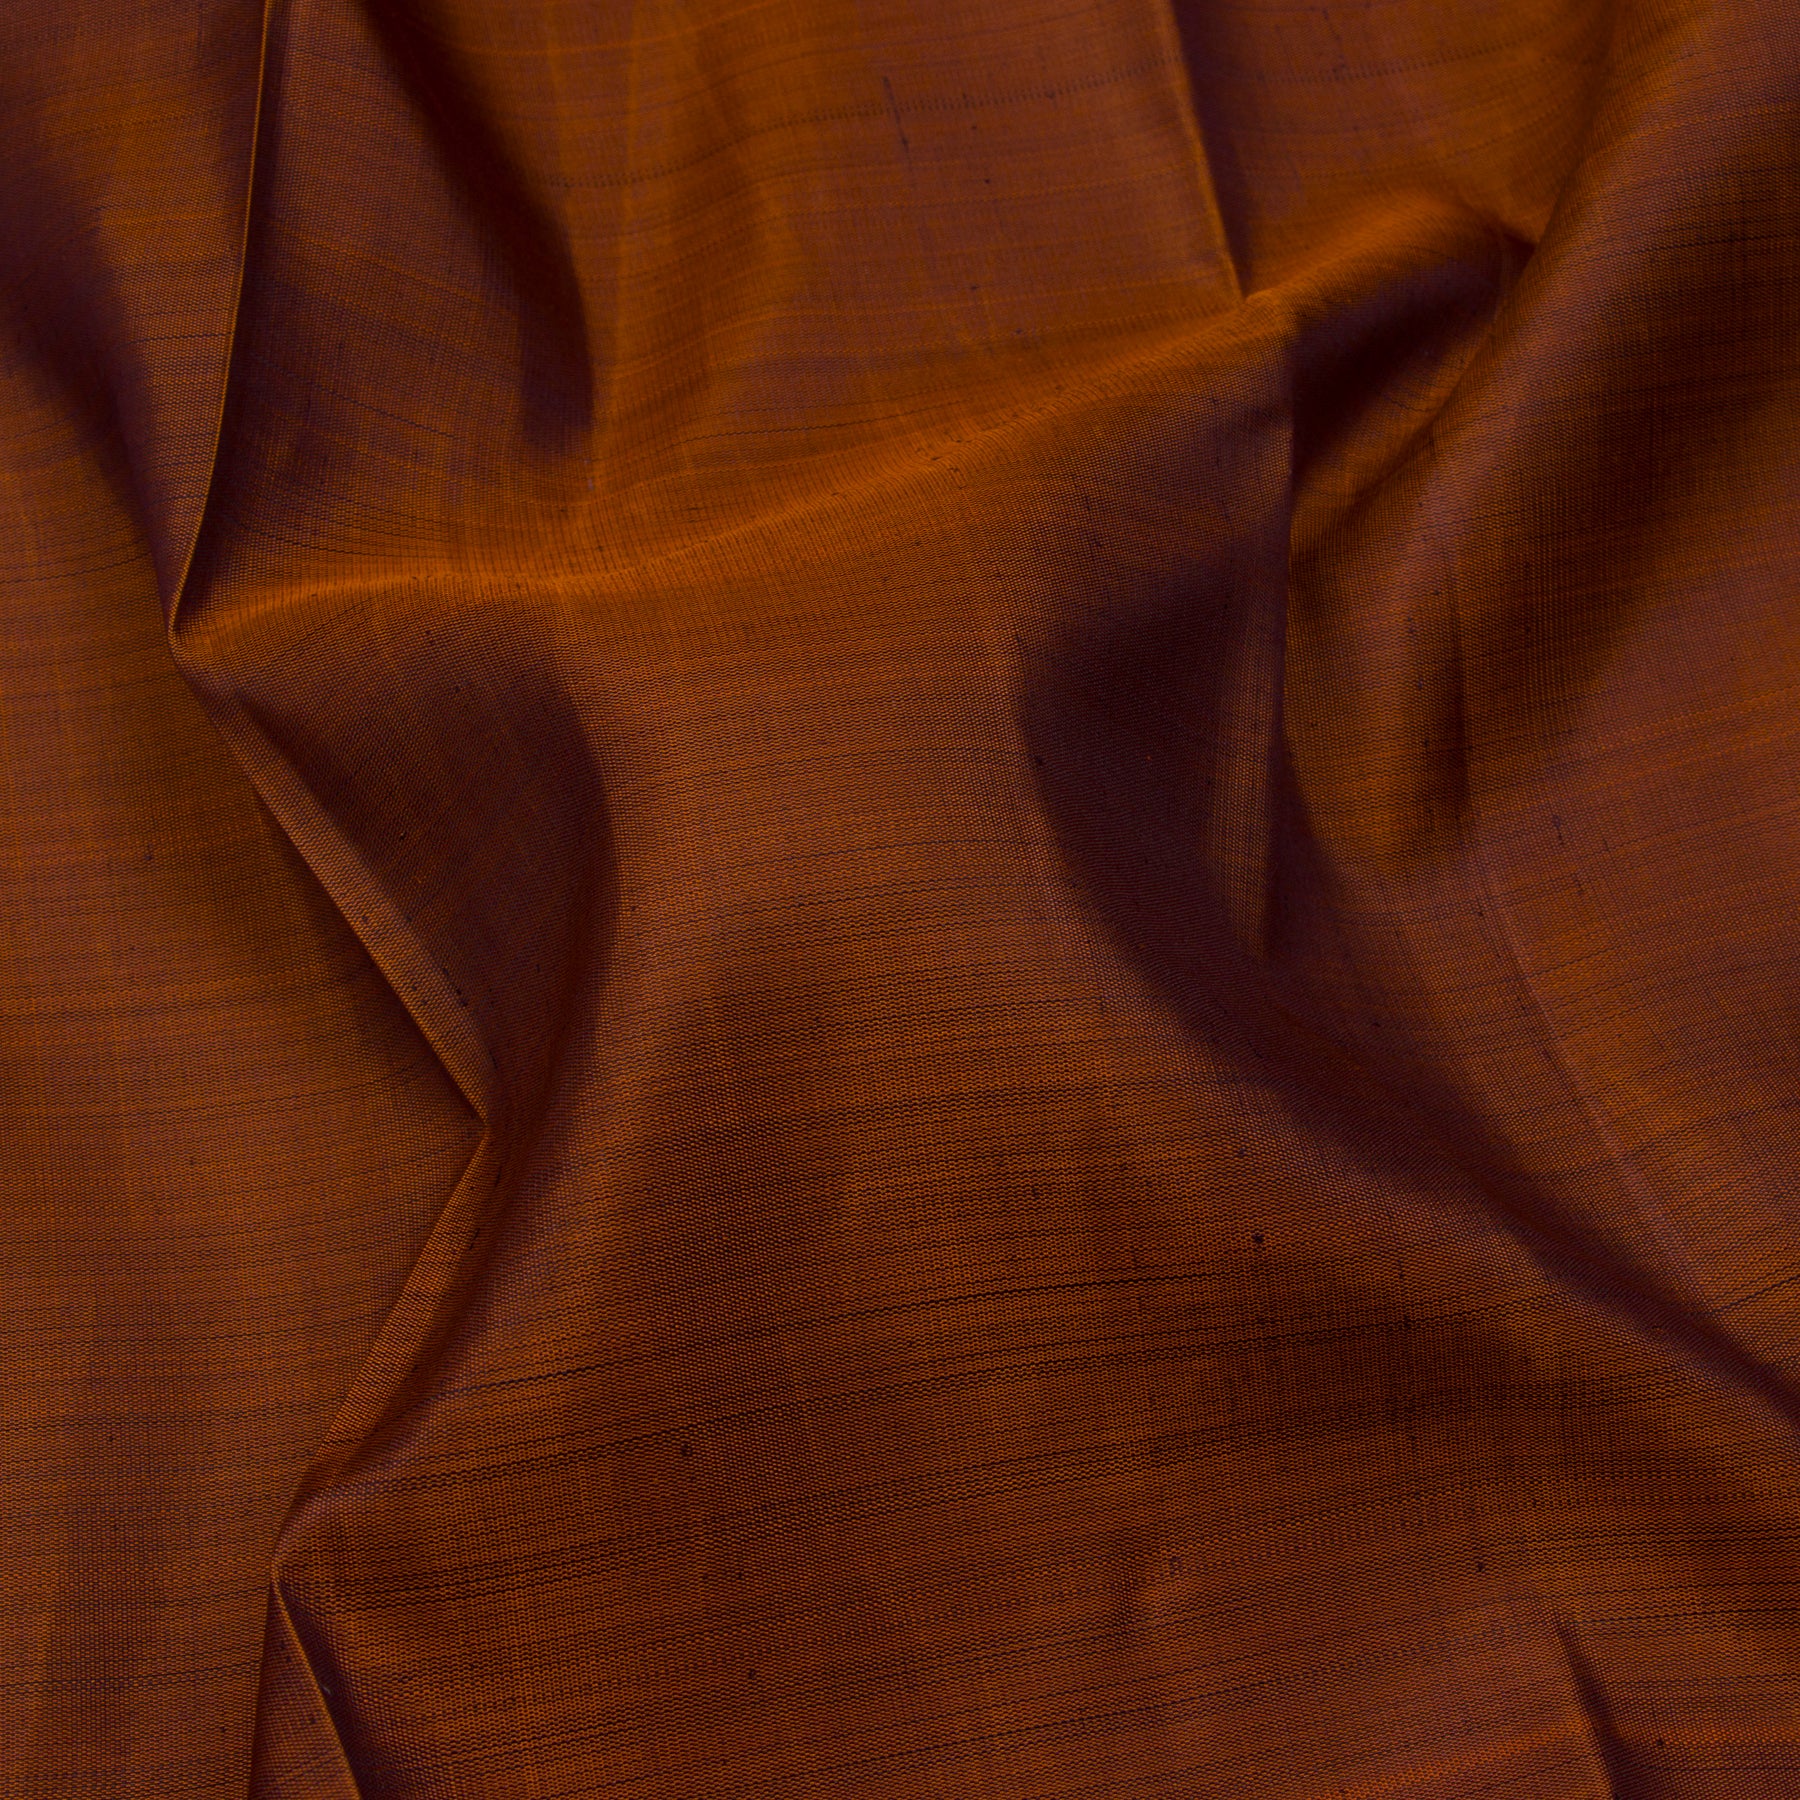 Kanakavalli Kanjivaram Silk Sari 23-599-HS001-05171 - Fabric View